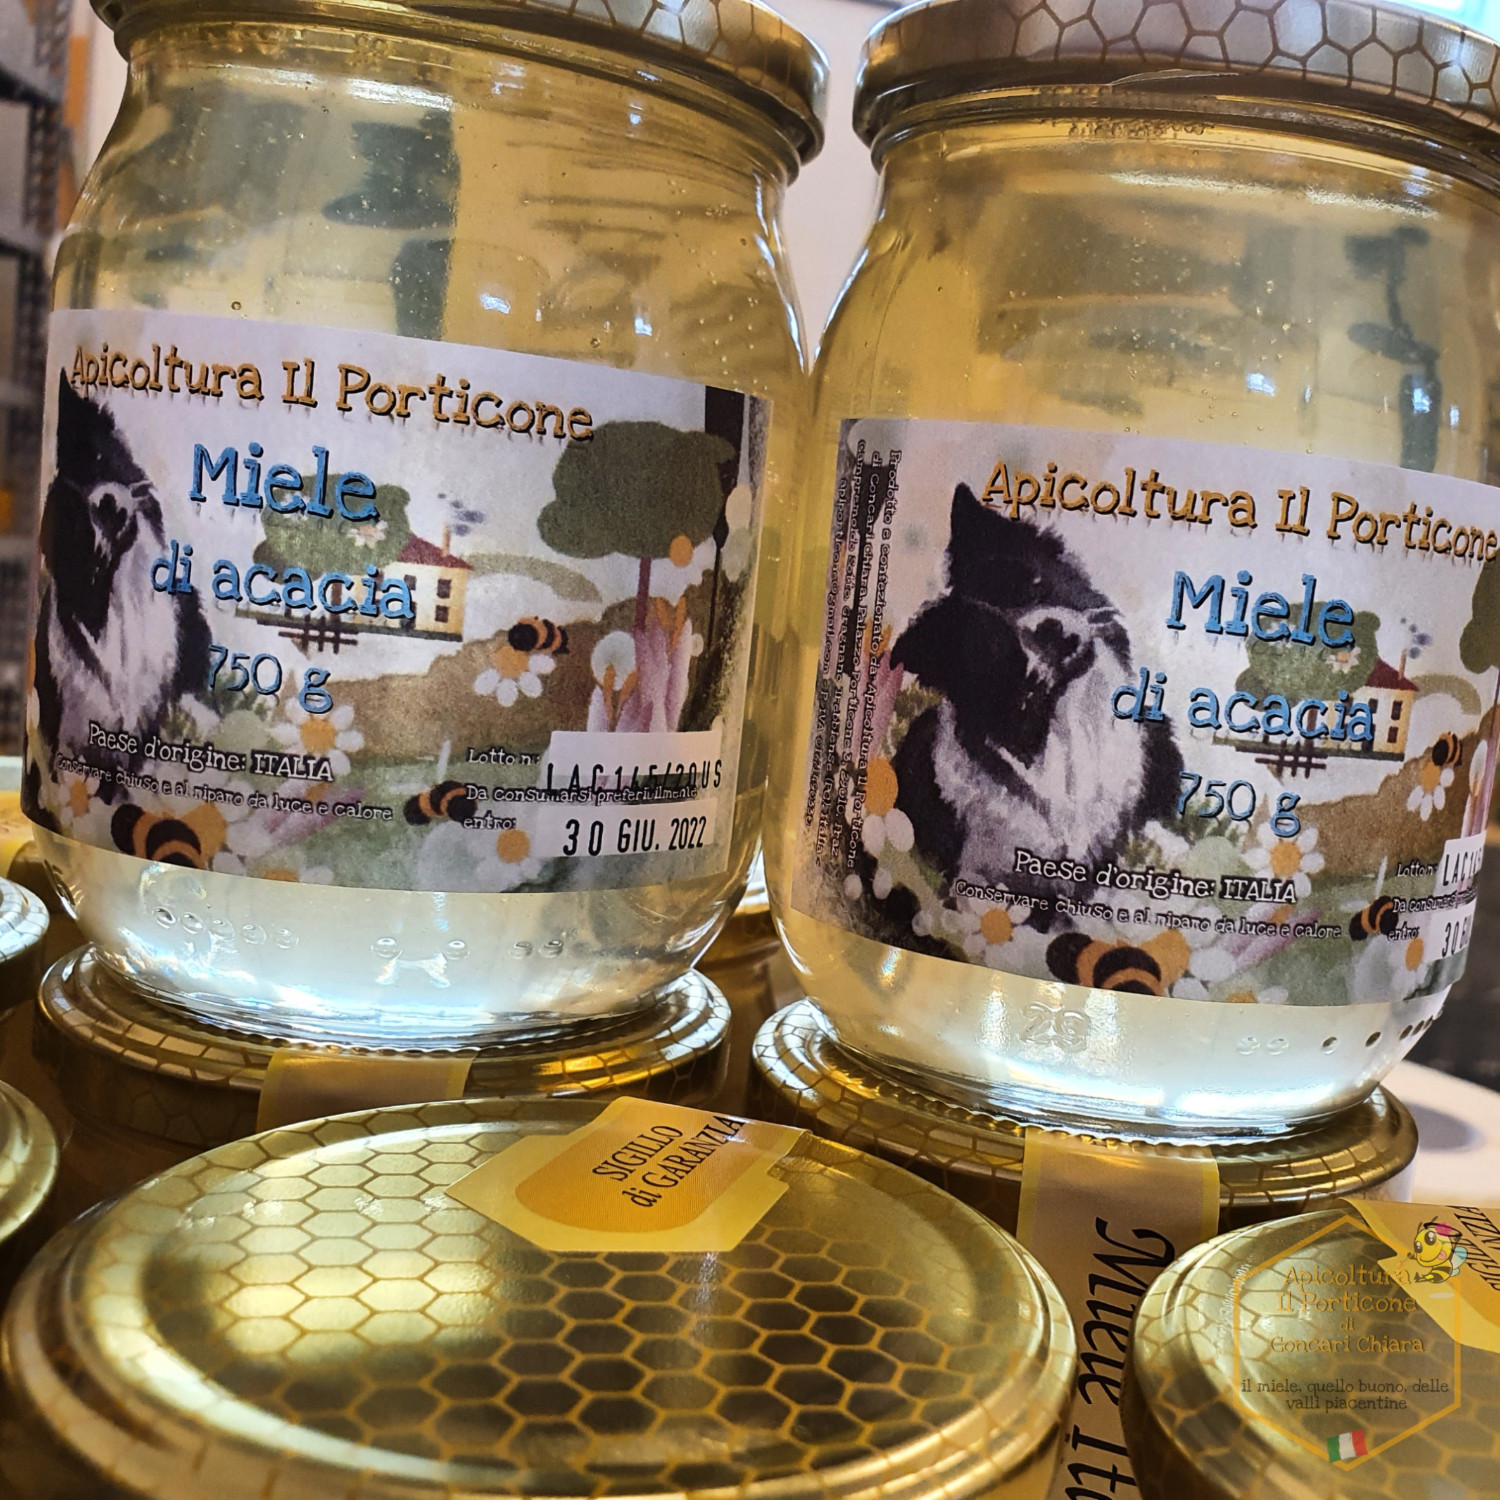 Le candele in pura cera d'api - Apicoltura Il Porticone